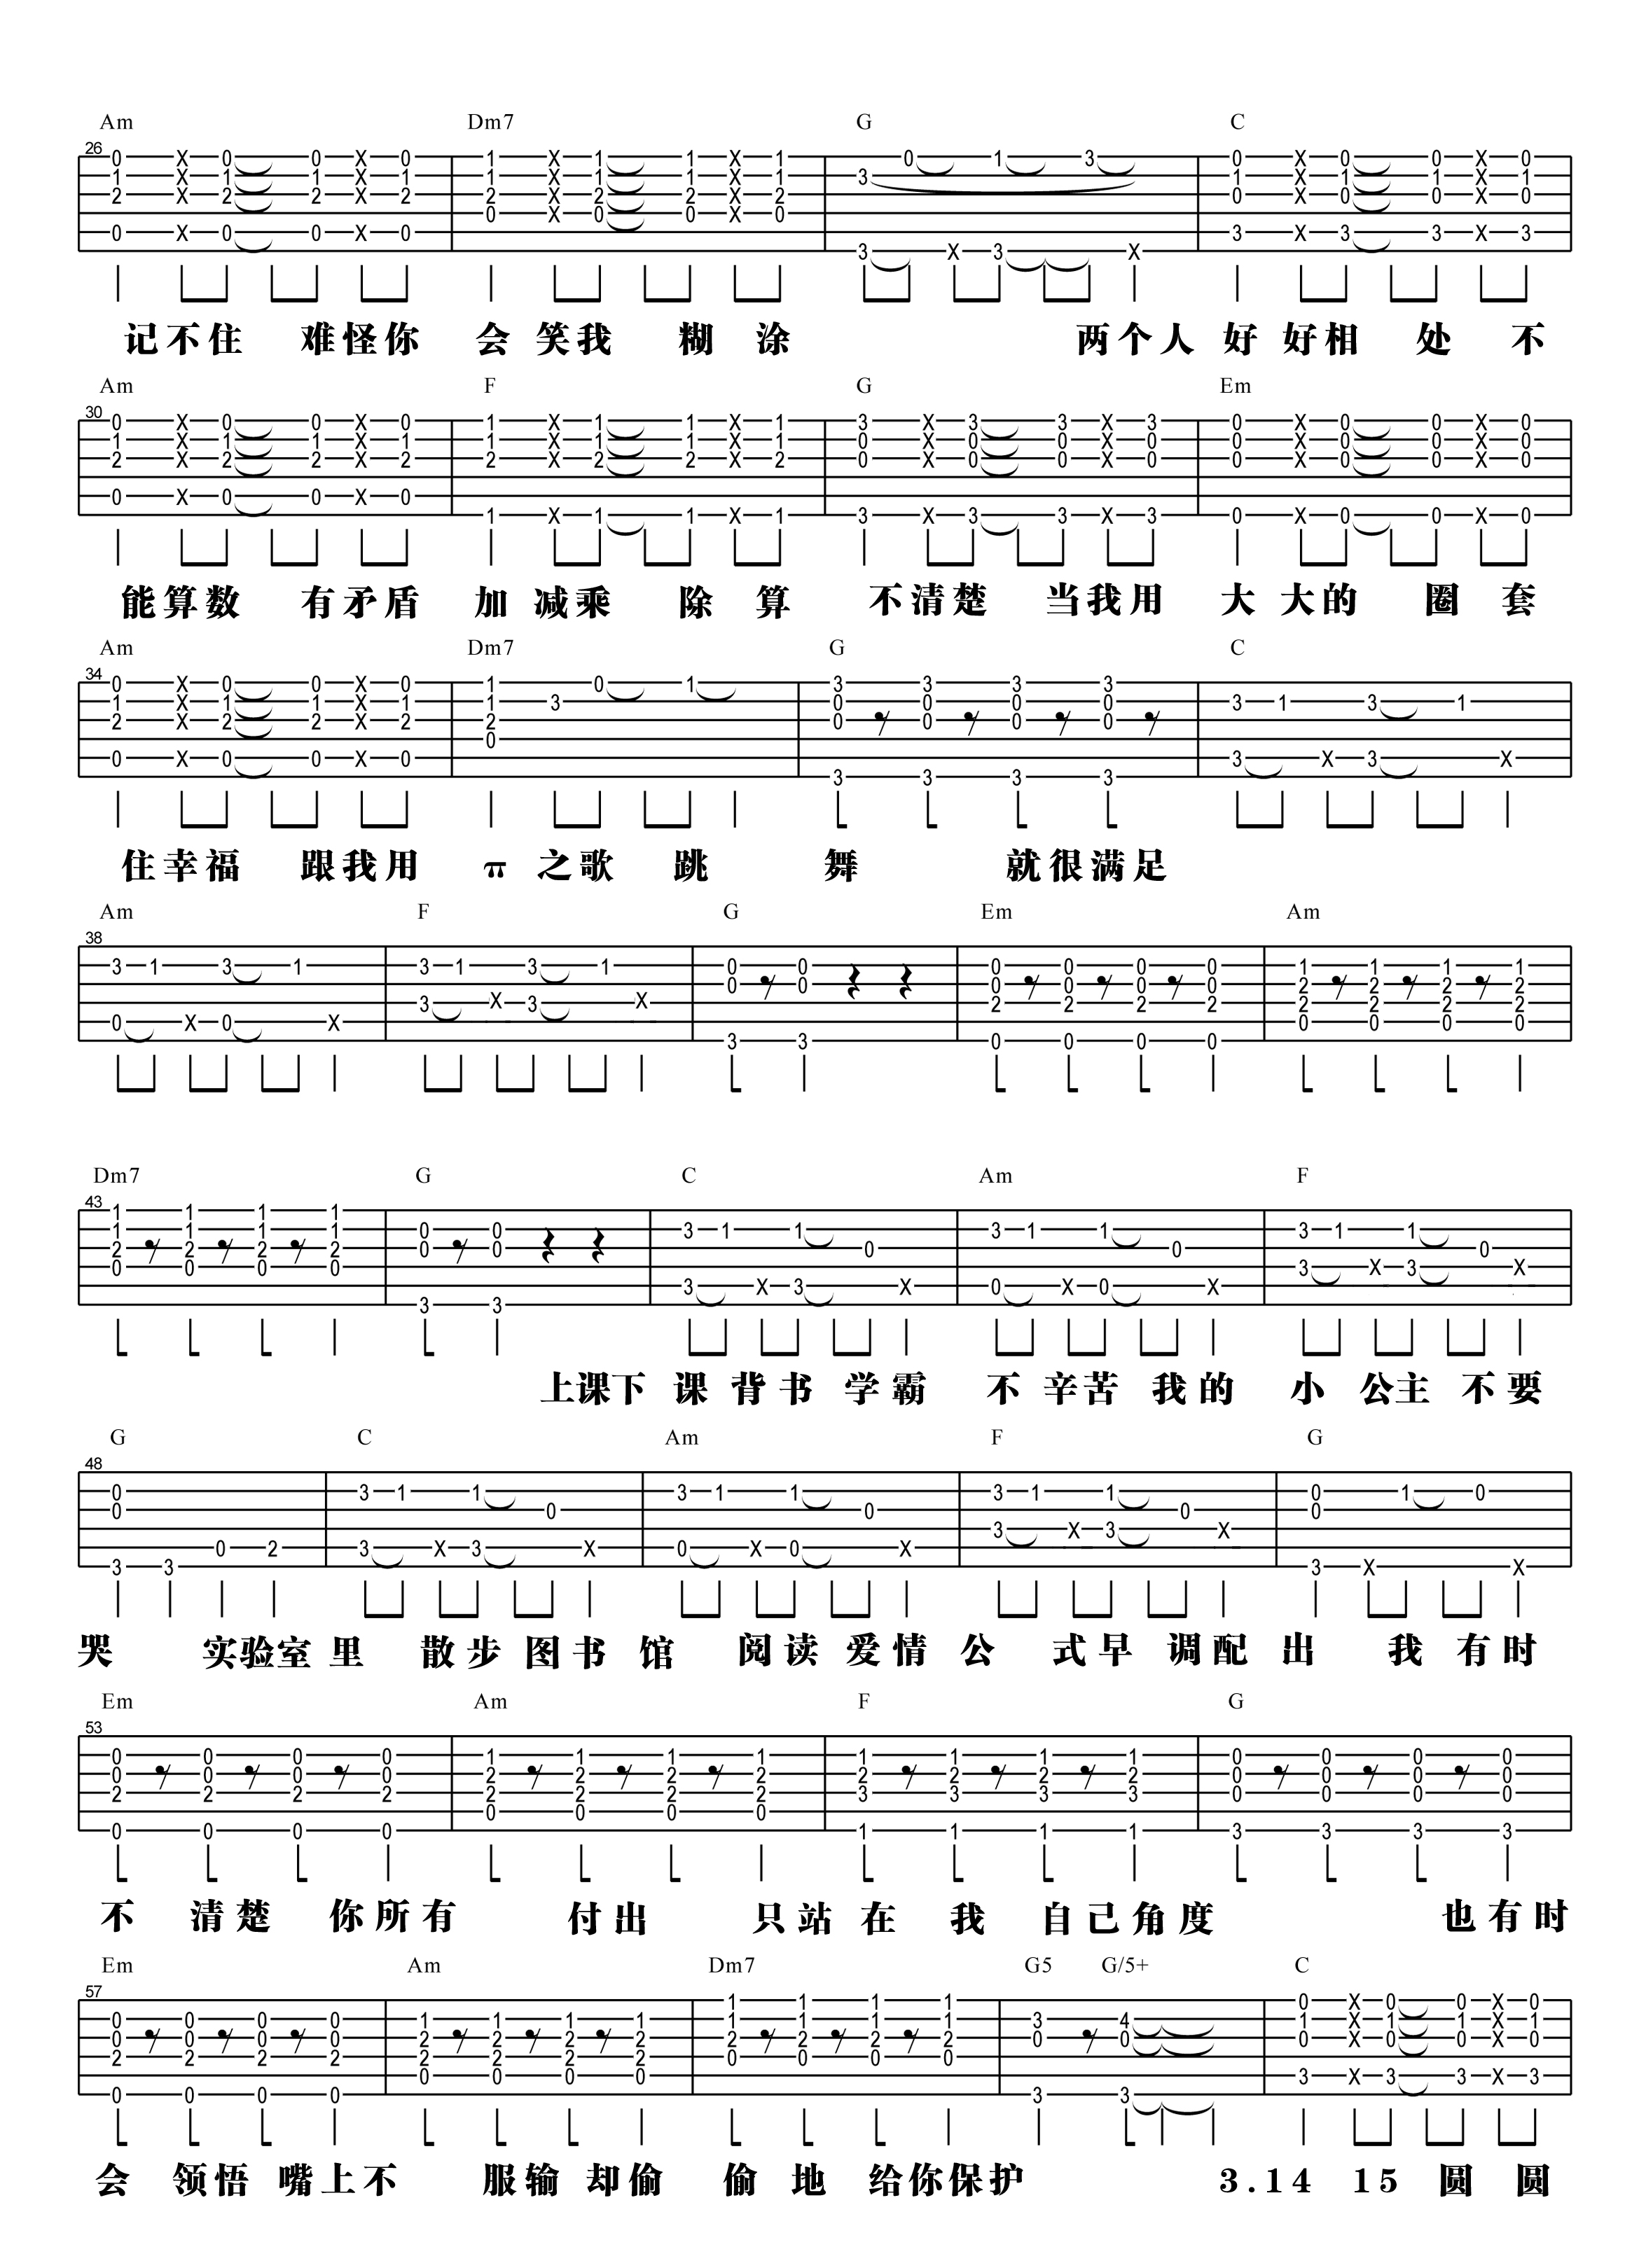 【阿信乐器】#22 汪苏泷《π之歌》吉他教学吉他谱(图片谱,弹唱,教学)_汪苏泷(silence.w)_π之歌-2.jpg